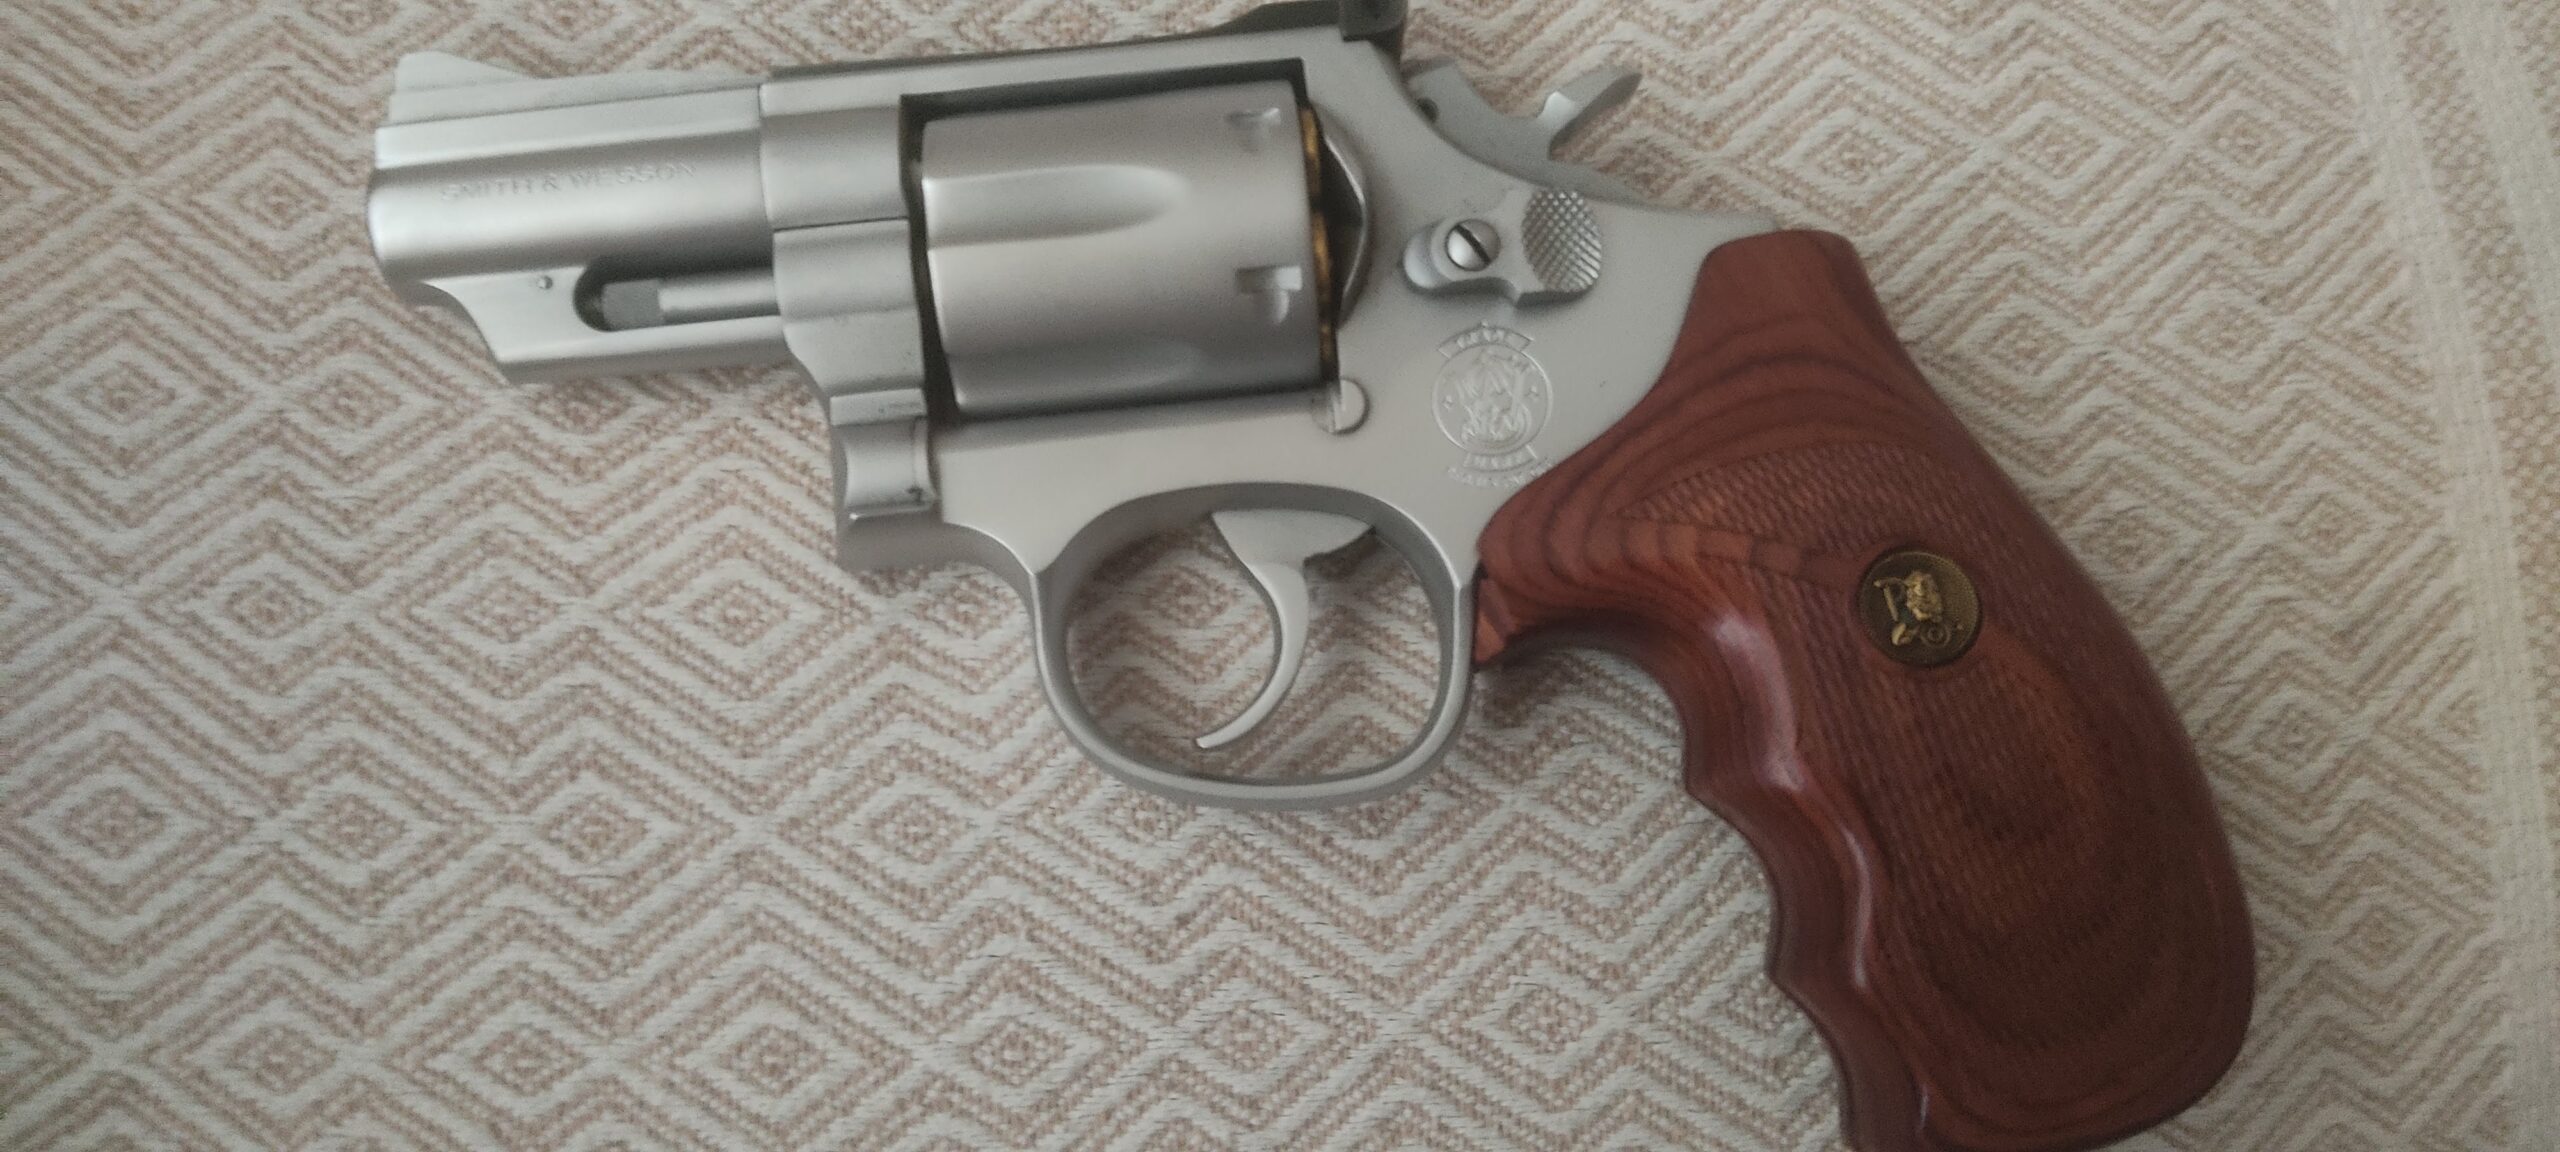 S&W 357 Magnum